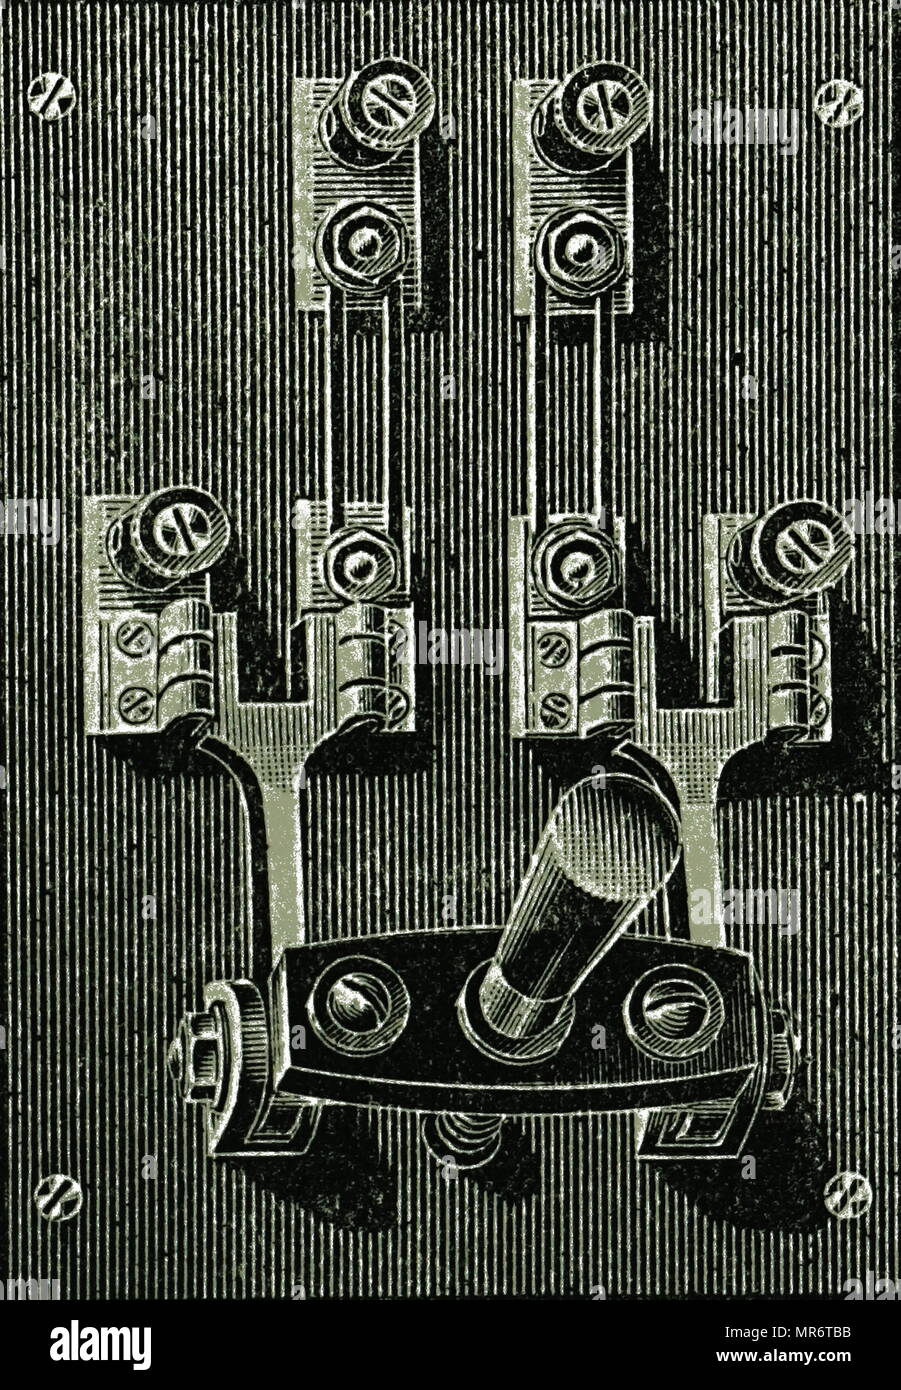 Gravur, ein zweipoliger Schalter. Vom 19. Jahrhundert Stockfotografie -  Alamy